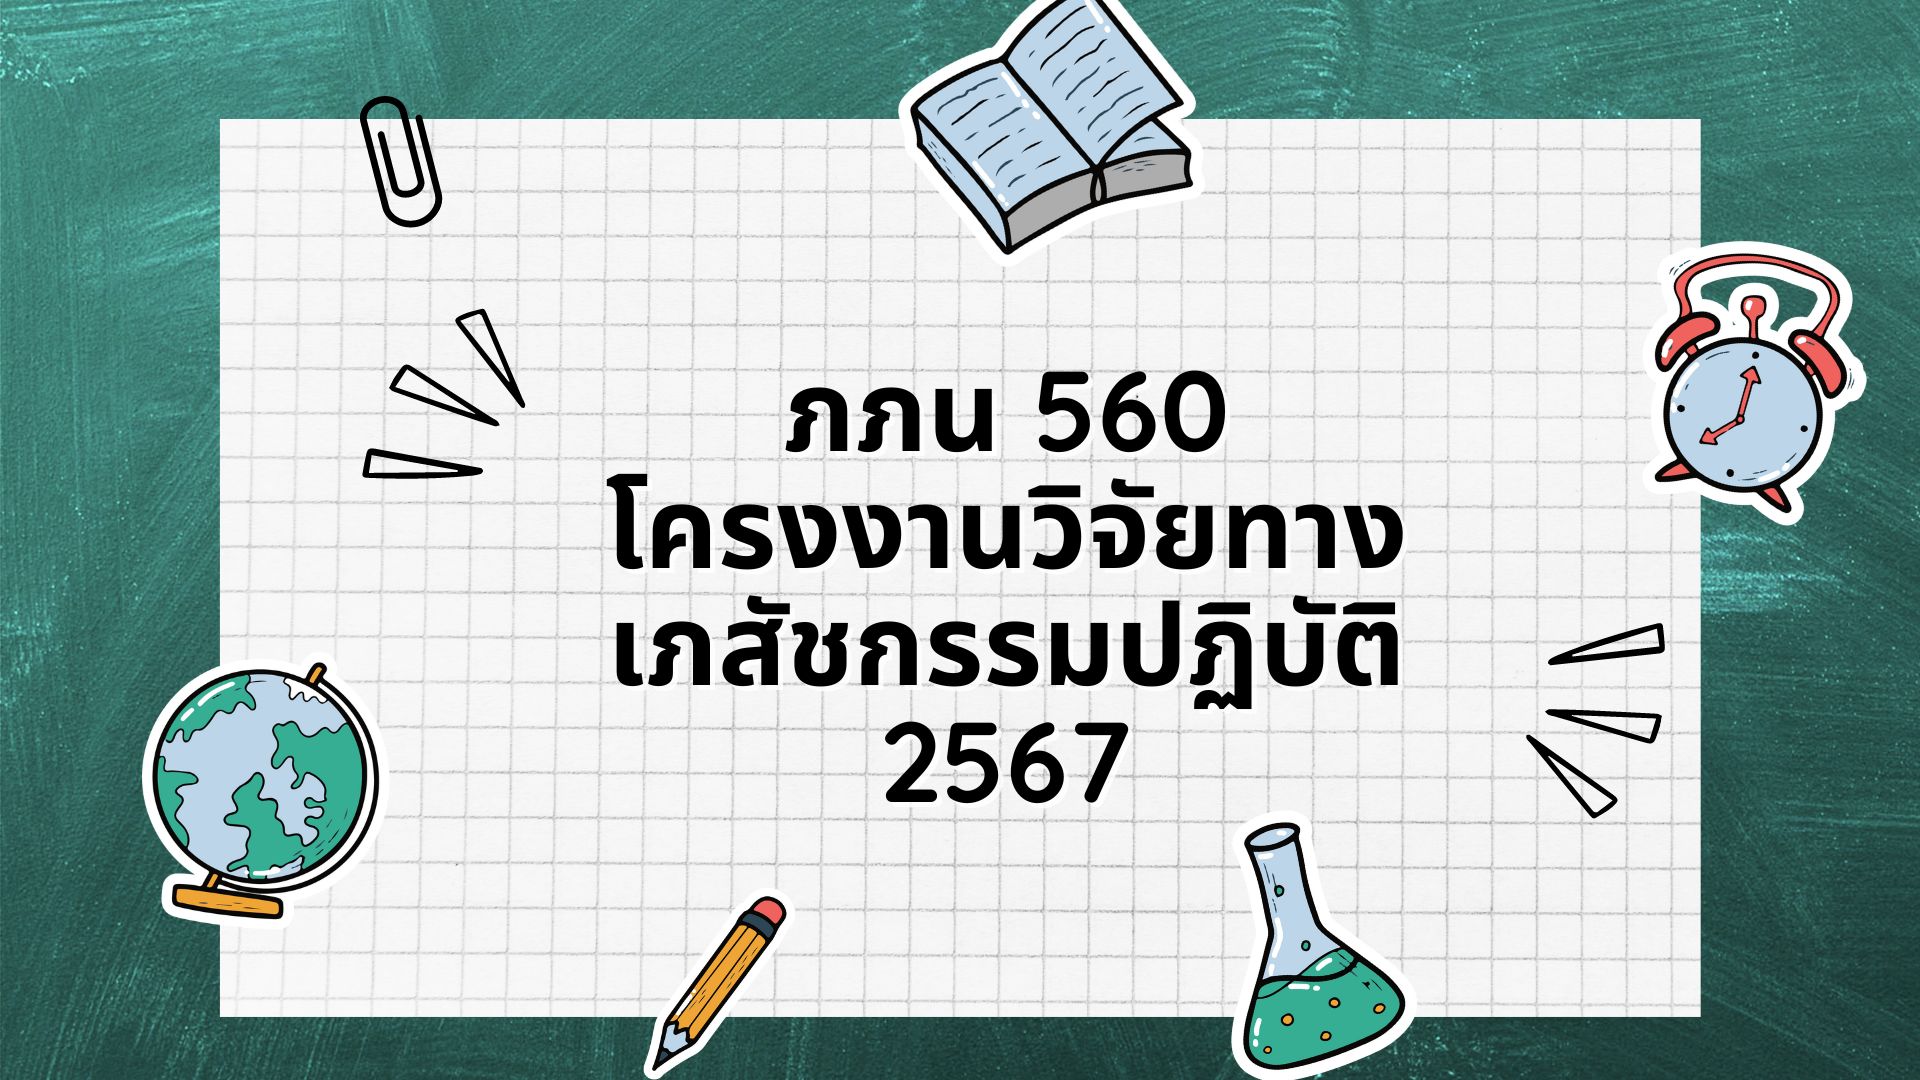 ภภน 560 โครงงานวิจัยทางเภสัชกรรมปฏิบัติ ปีการศึกษา 2567